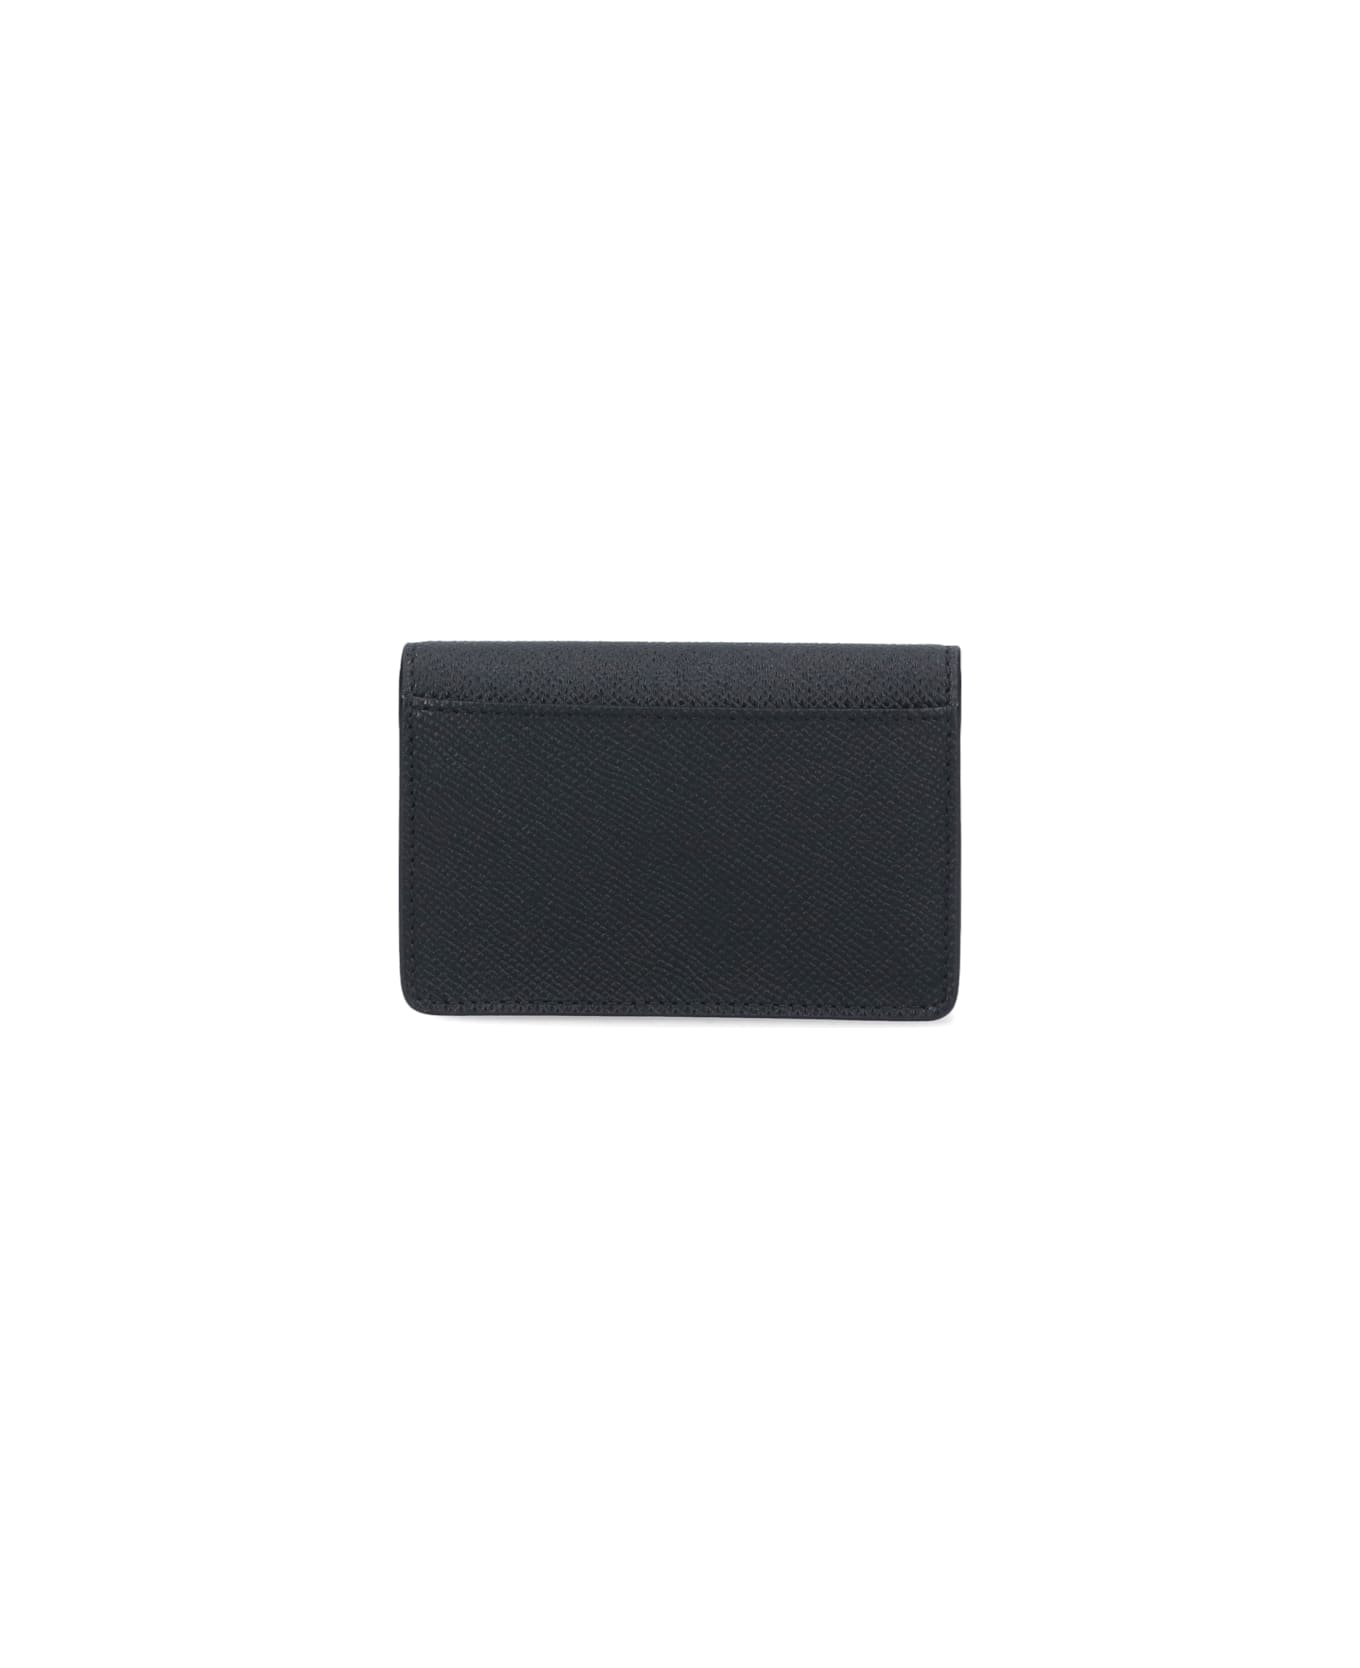 Ferragamo Wallet With Gancini - Black   財布